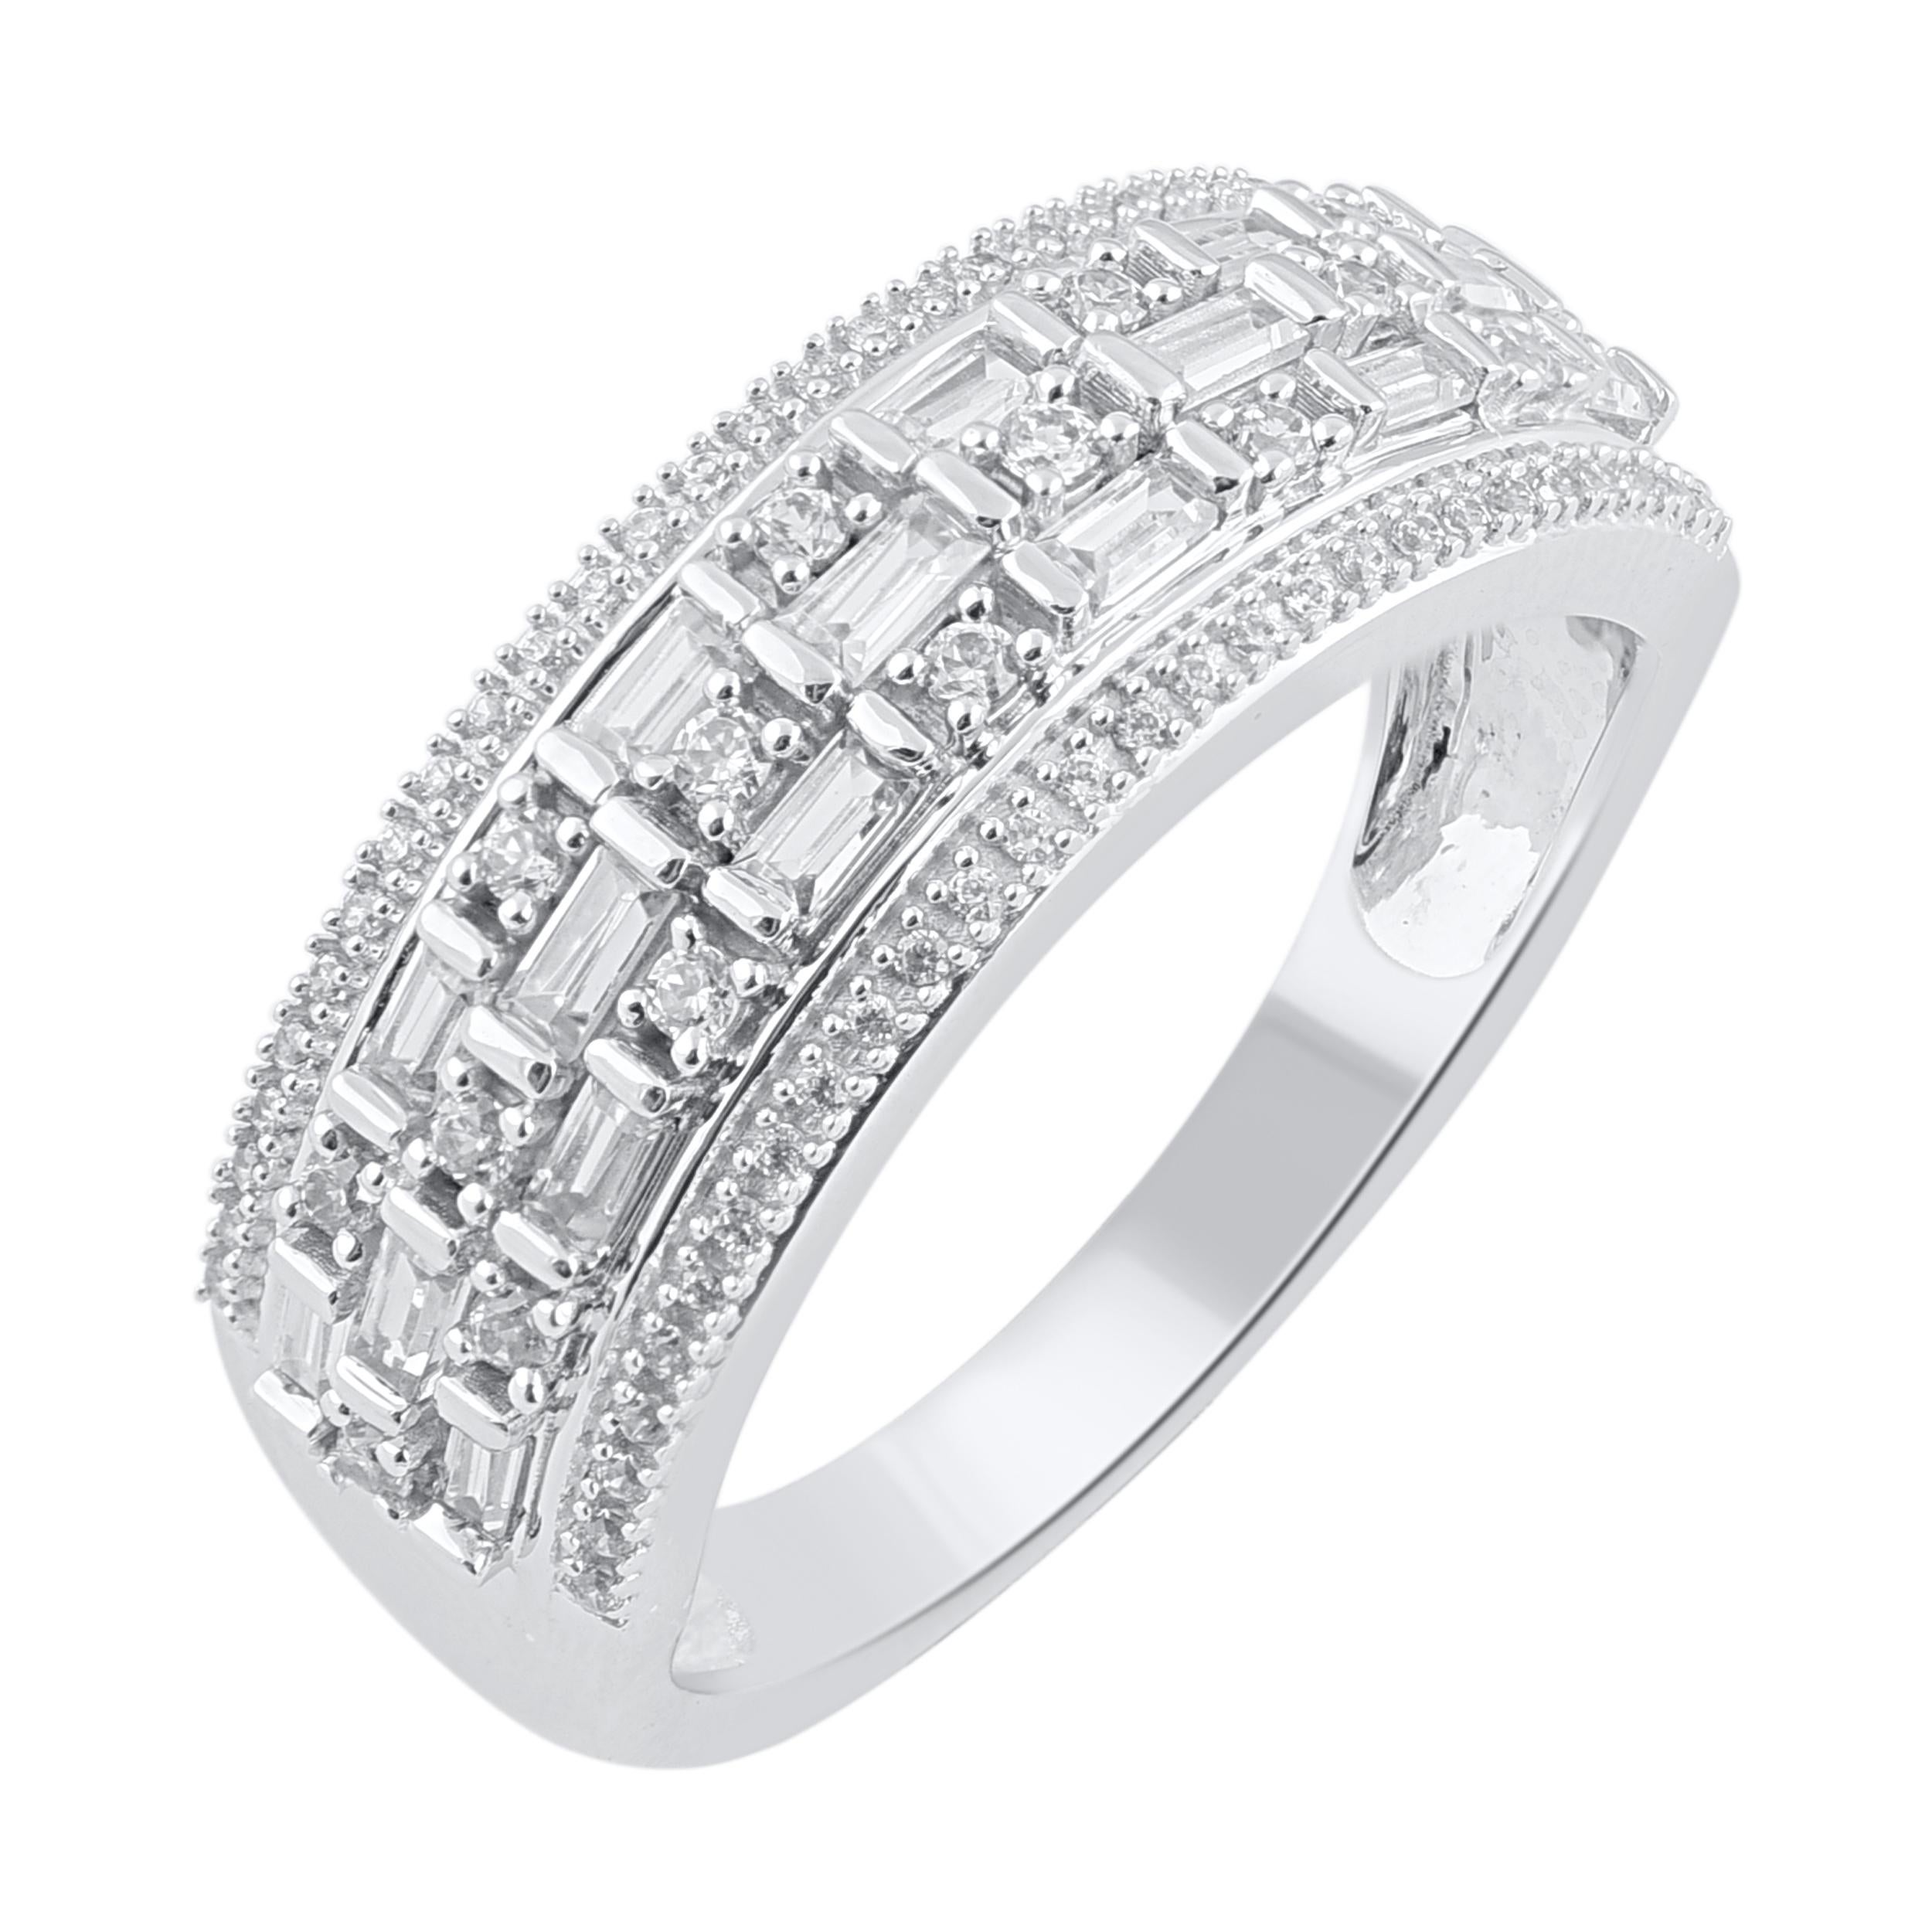 Machen Sie diesen besonderen Moment magisch mit dem exquisiten Diamant-Verlobungsring. Dieser Ring ist wunderschön aus 18 Karat Weißgold gefertigt und mit 87 runden Diamanten im Brillant- und Baguetteschliff in Zacken- und Kanalfassung besetzt. Das